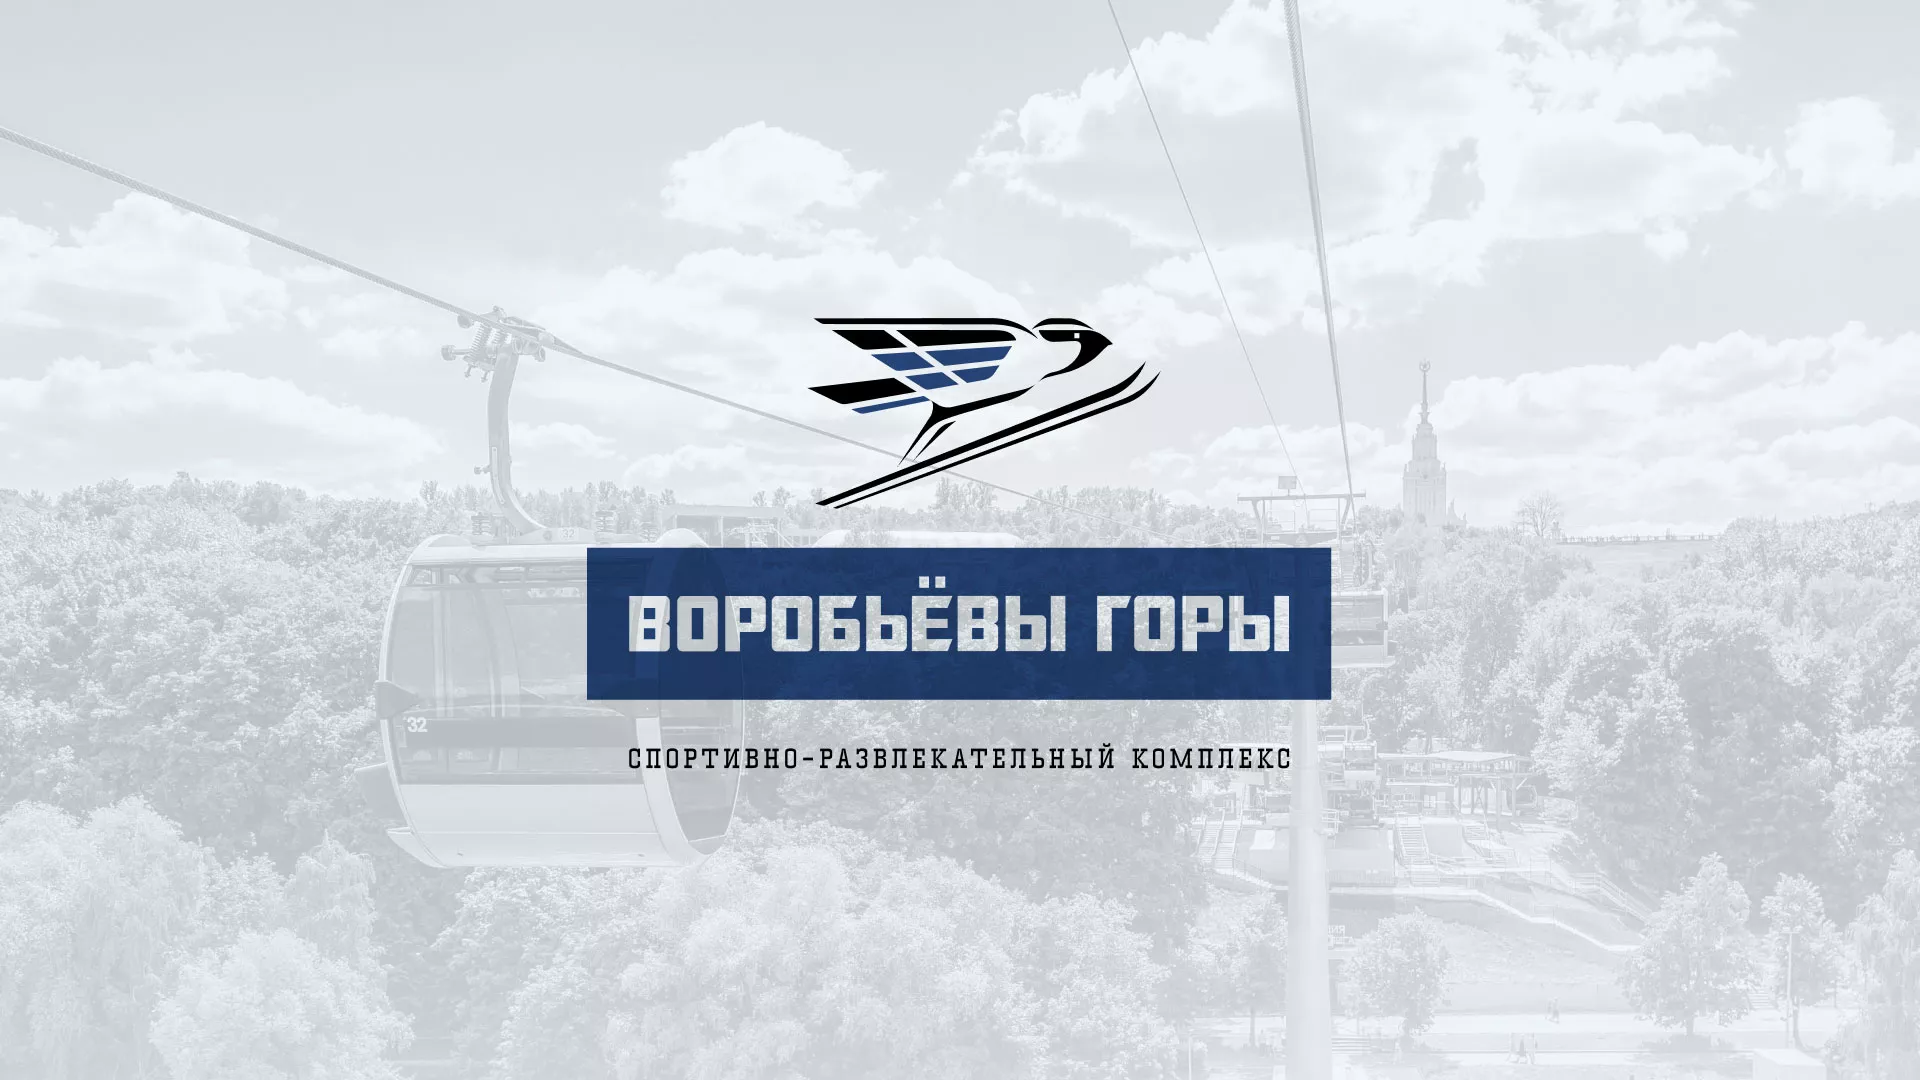 Разработка сайта в Новохопёрске для спортивно-развлекательного комплекса «Воробьёвы горы»